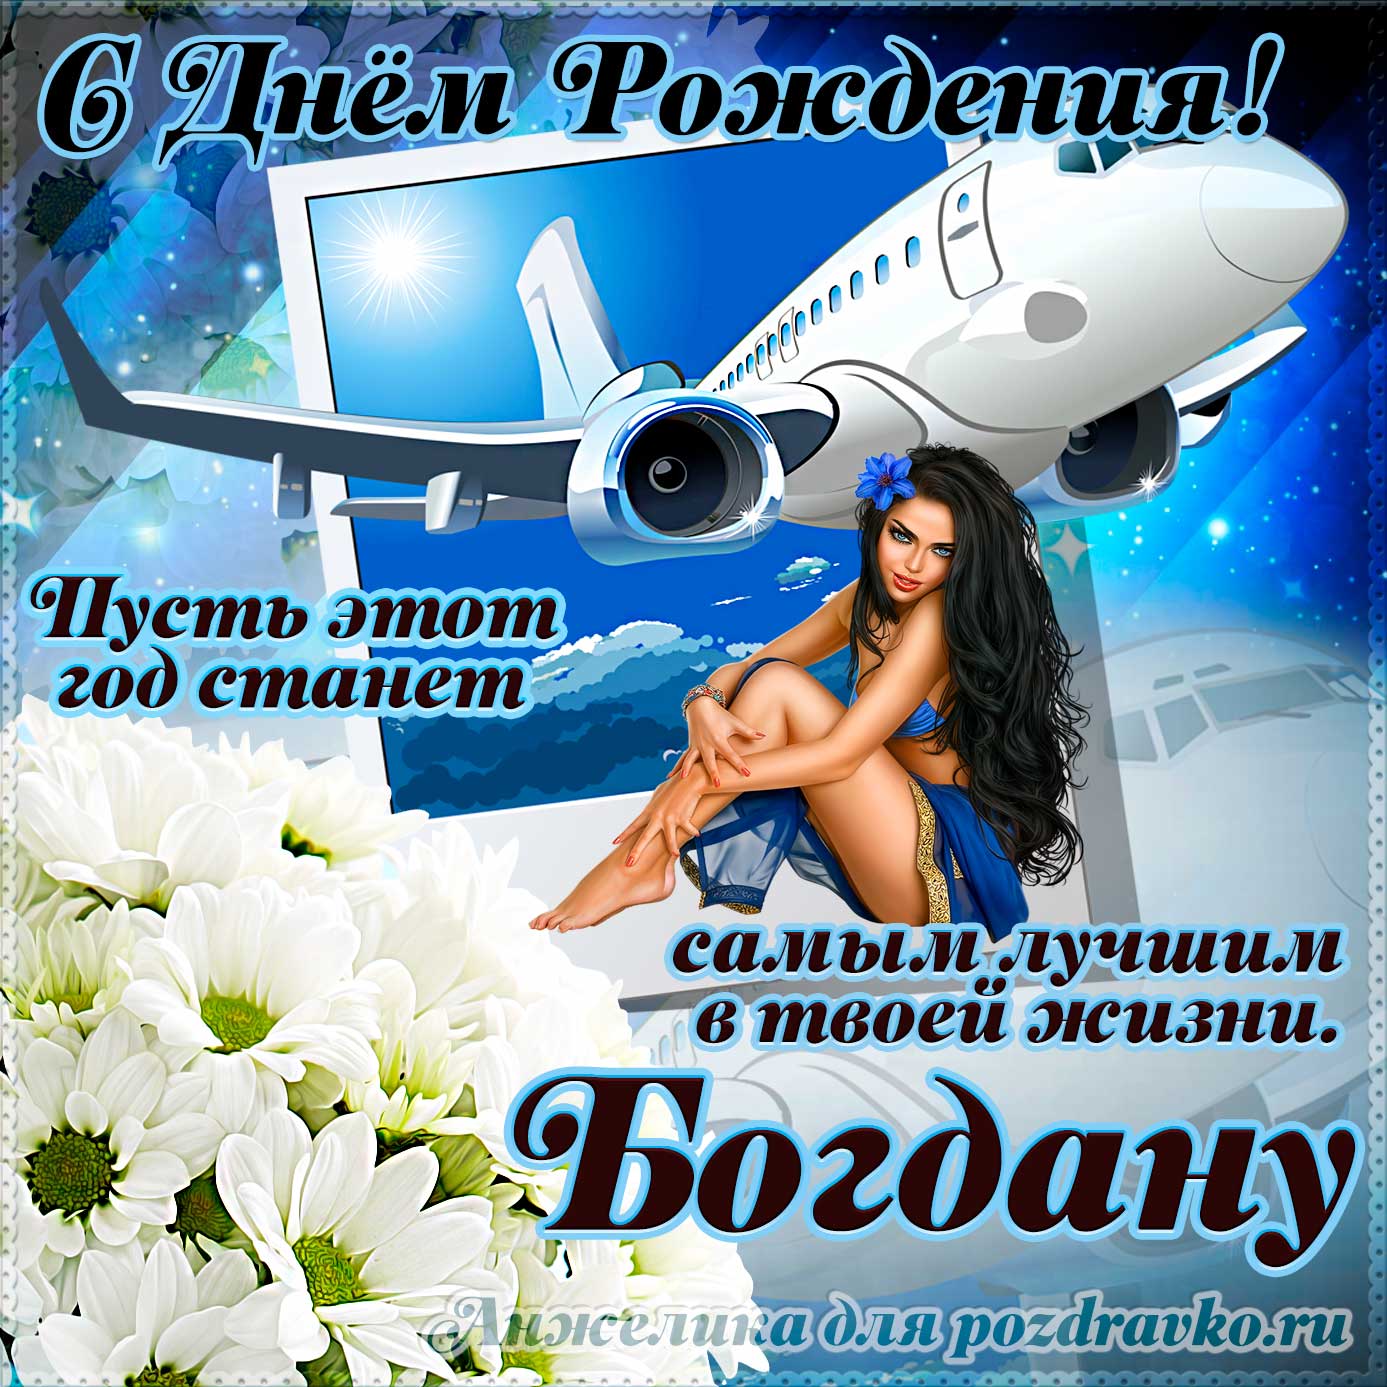 Открытка - Богдану на день рождения с красивым пожеланием самолетом и девушкой. Скачать бесплатно или отправить картинку.